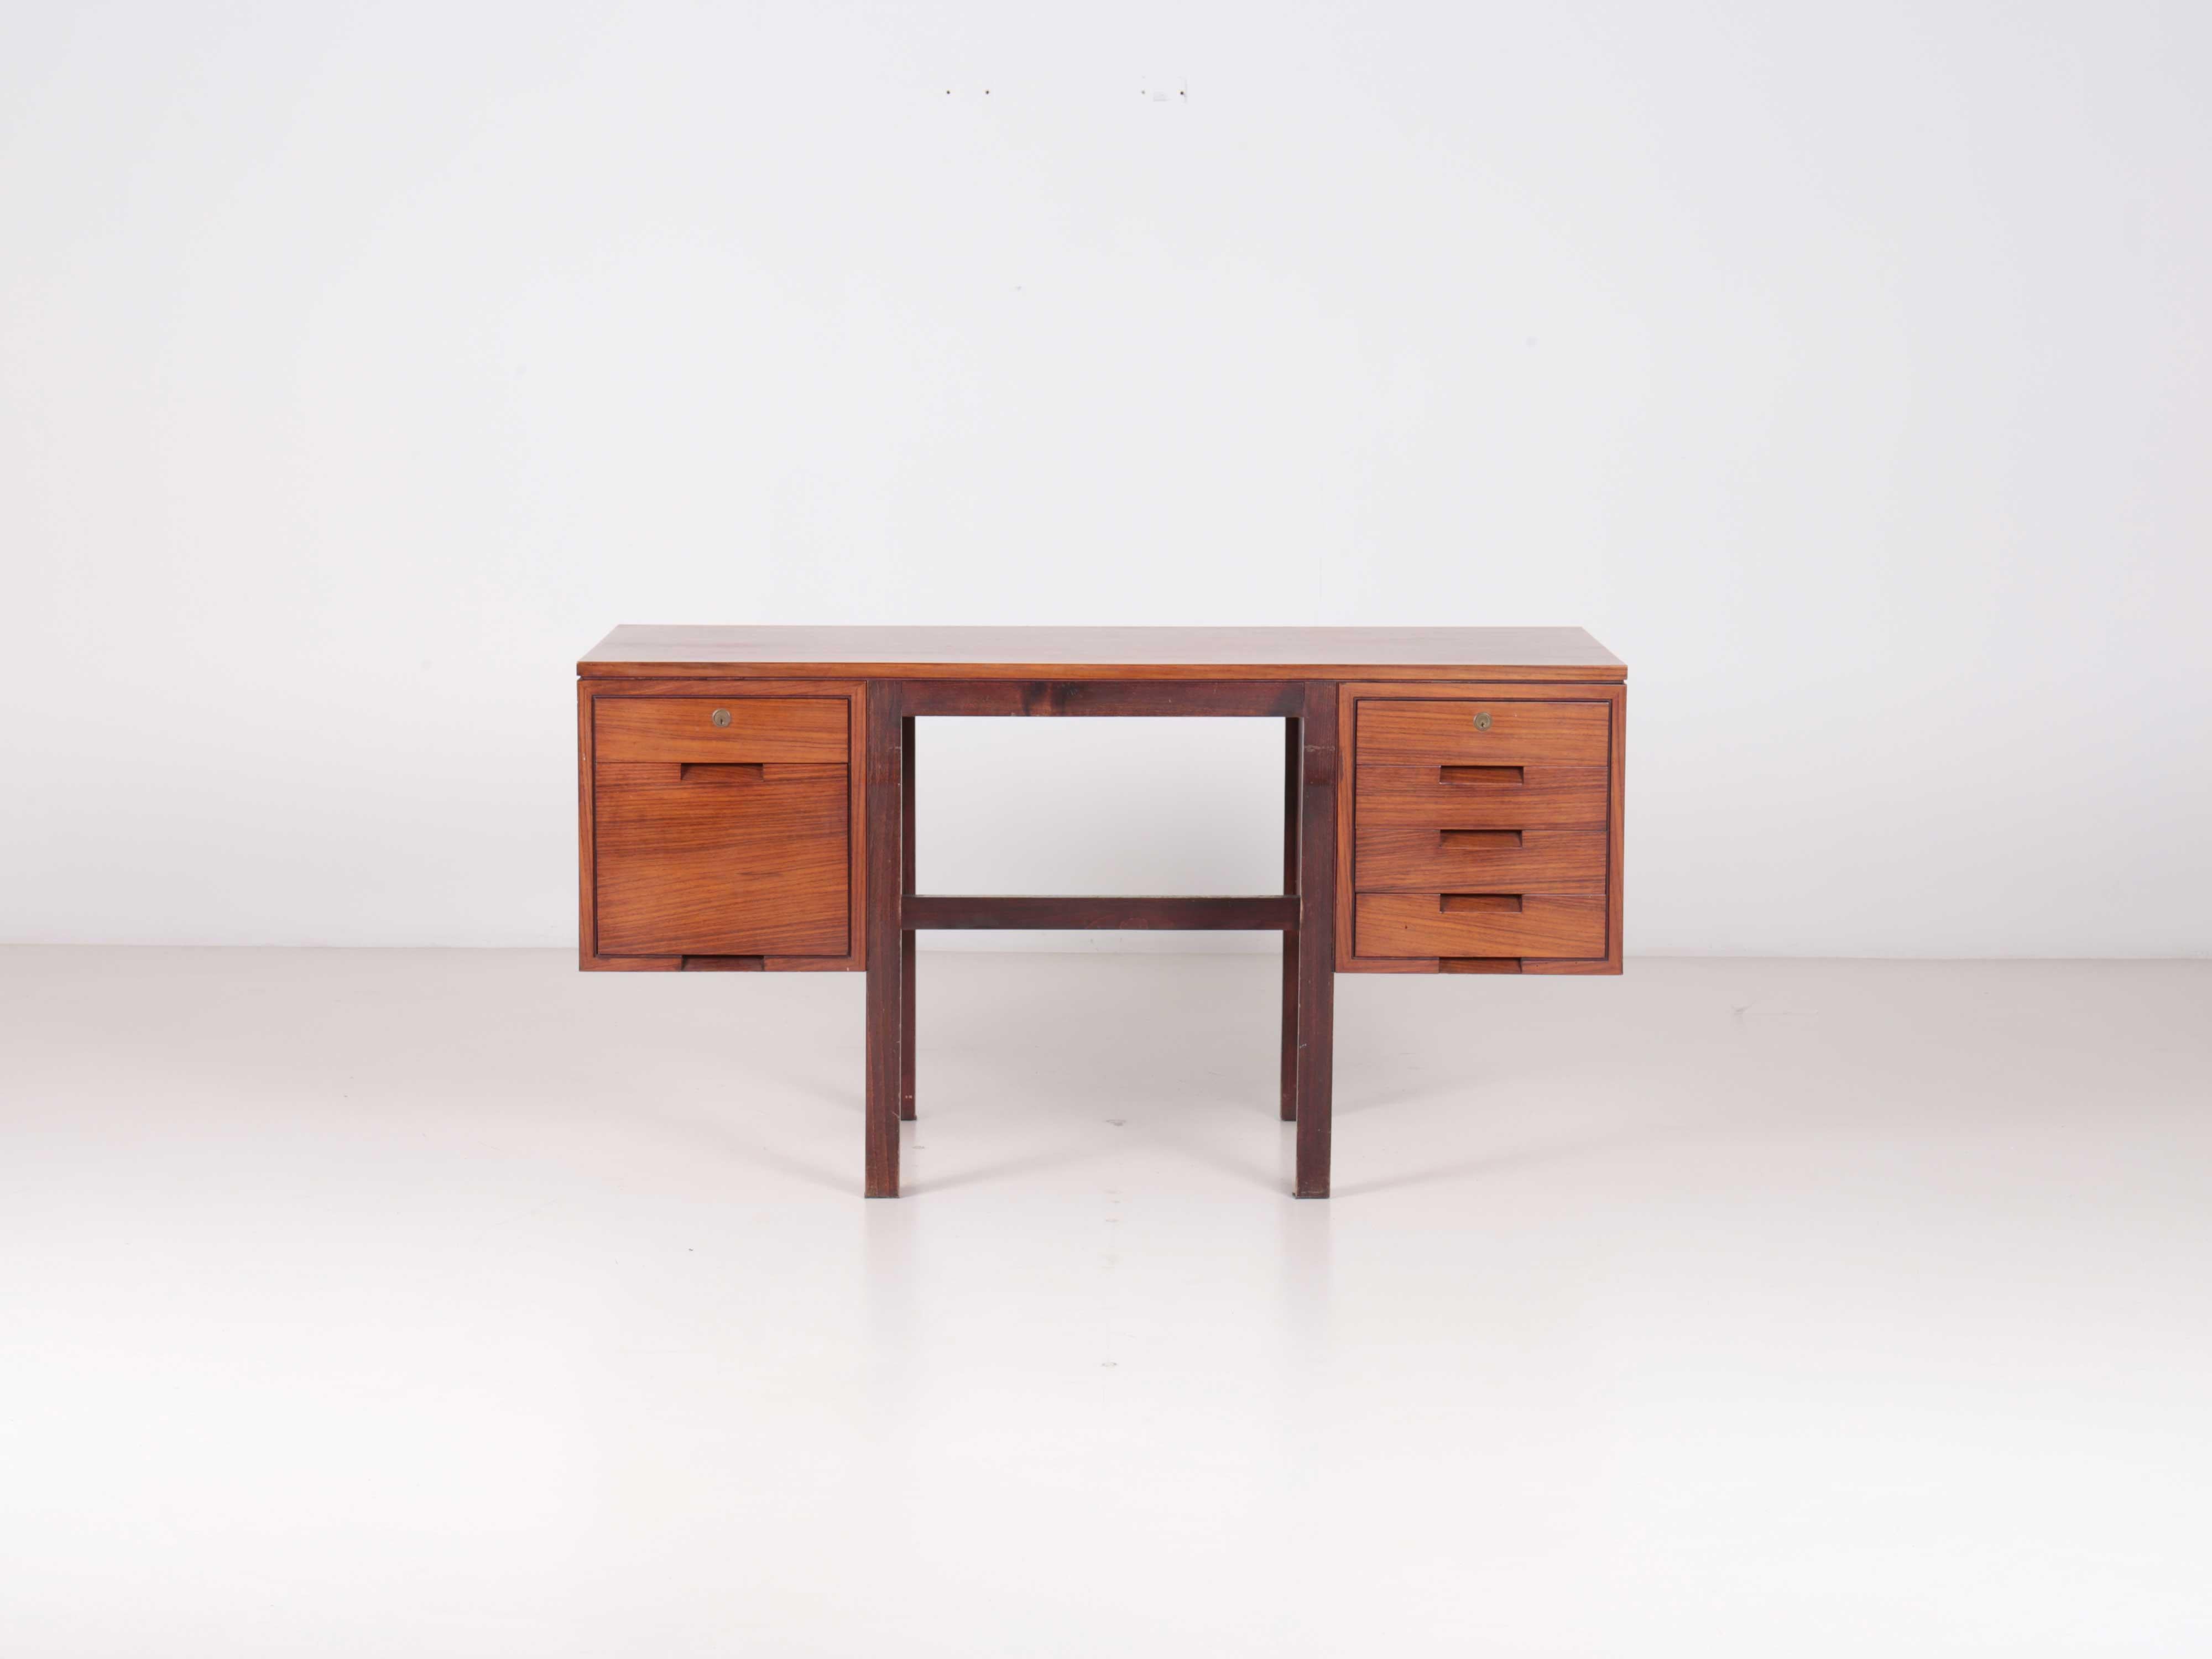 Schreibtisch Canaan von Marcel Breuer, hergestellt von Gavina spa im Jahr 1962. 

Schreibtisch mit Schubladen und Aktenschrank. Struktur aus Palisanderholz.

Dino Gavina war im Landhaus von Breuer in New Canaan. Hier fand er dieses Meisterwerk und